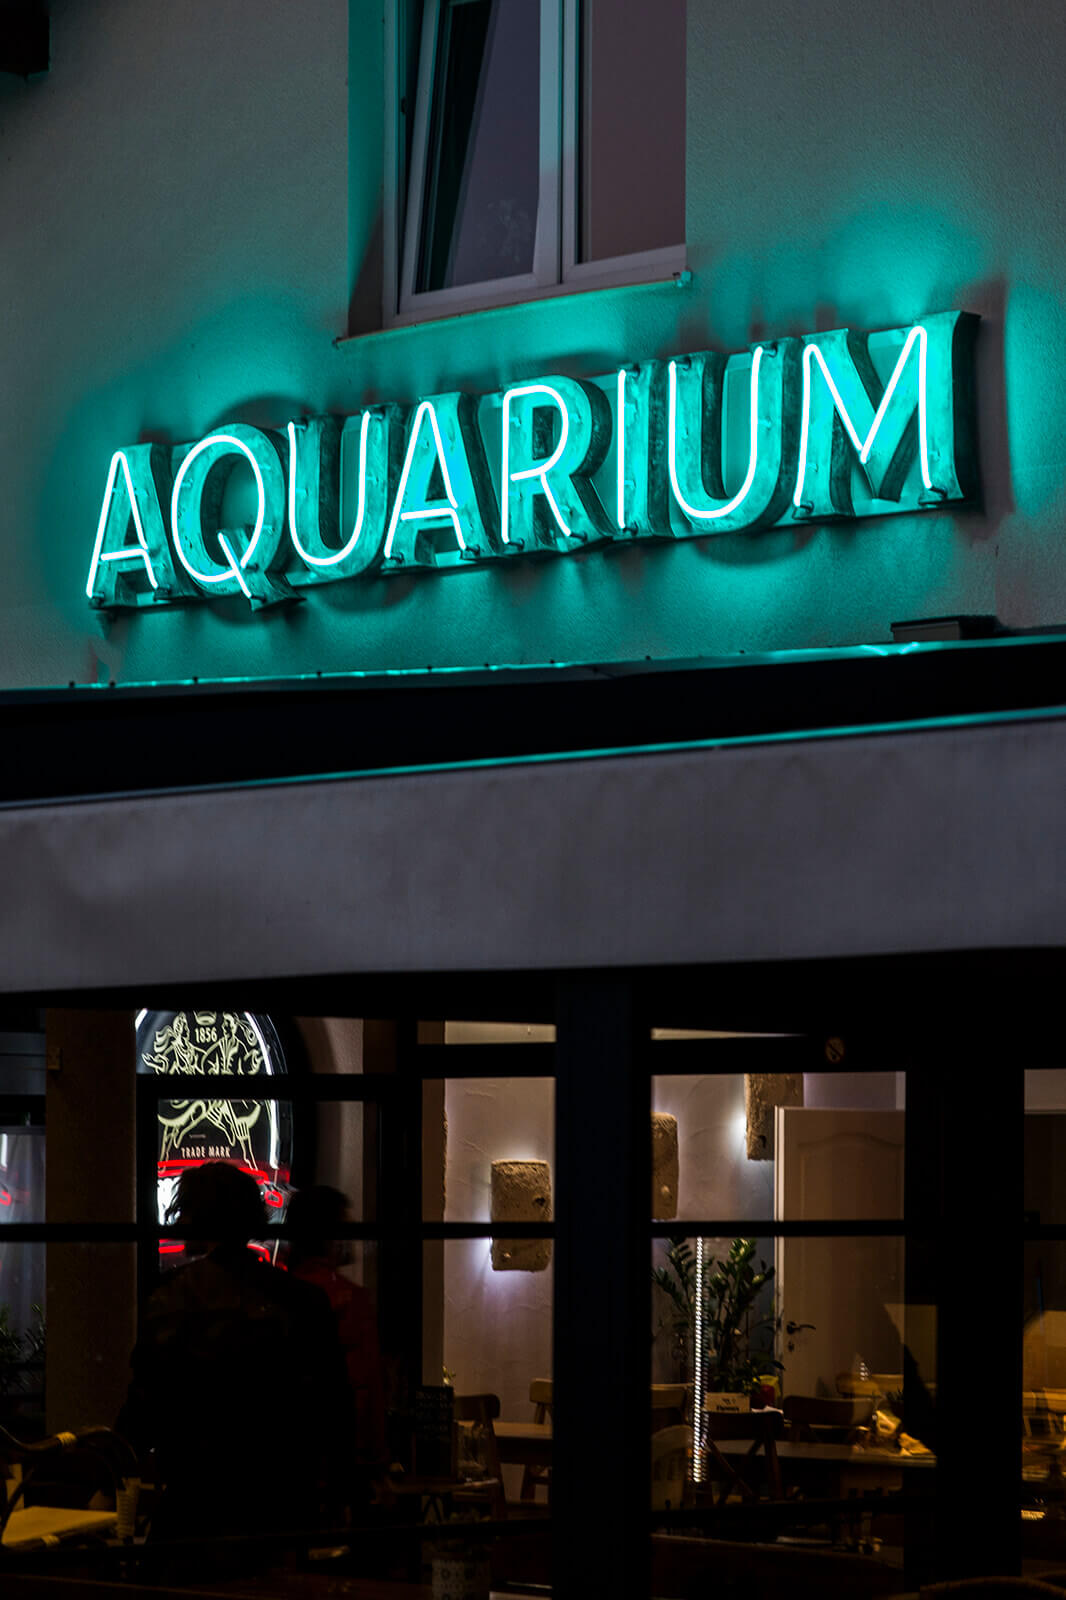 acquario acquario - acquario-neon-sul-parete-dell'edificio-lettere-coperte-patina-neon-sopra l'ingresso-al-ristorante-neon-verde-sul-parete-dell'edificio-neon-su-una-stele-sotto-vetro (31).jpg